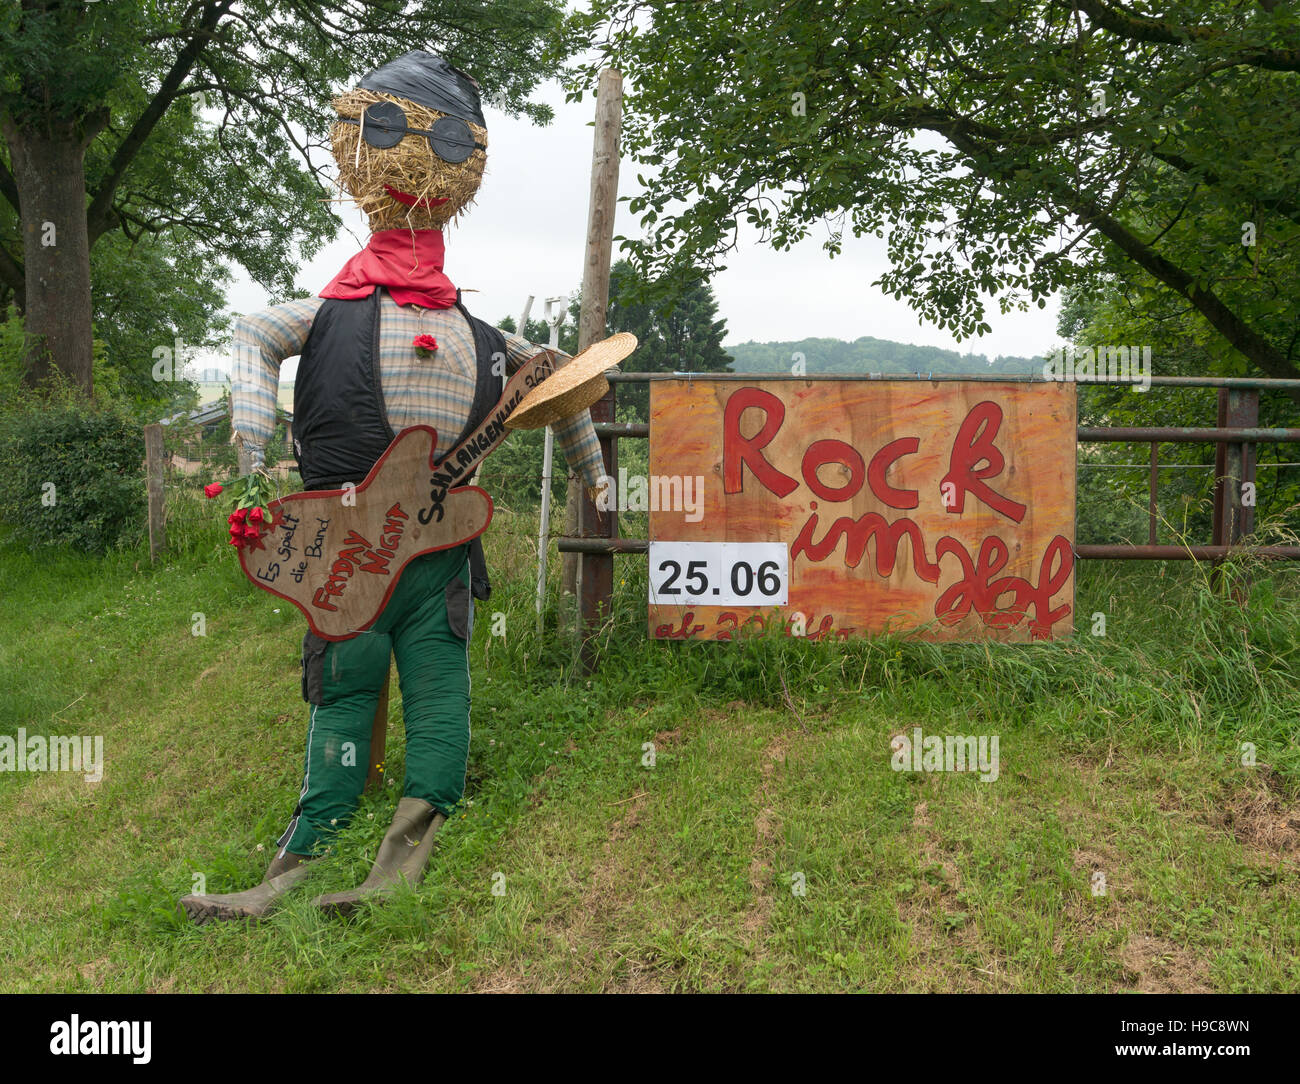 Divertido diorama publicidad un concierto de música rock con un maniquí rellenas de paja sosteniendo una guitarra, Alemania, Europa Foto de stock